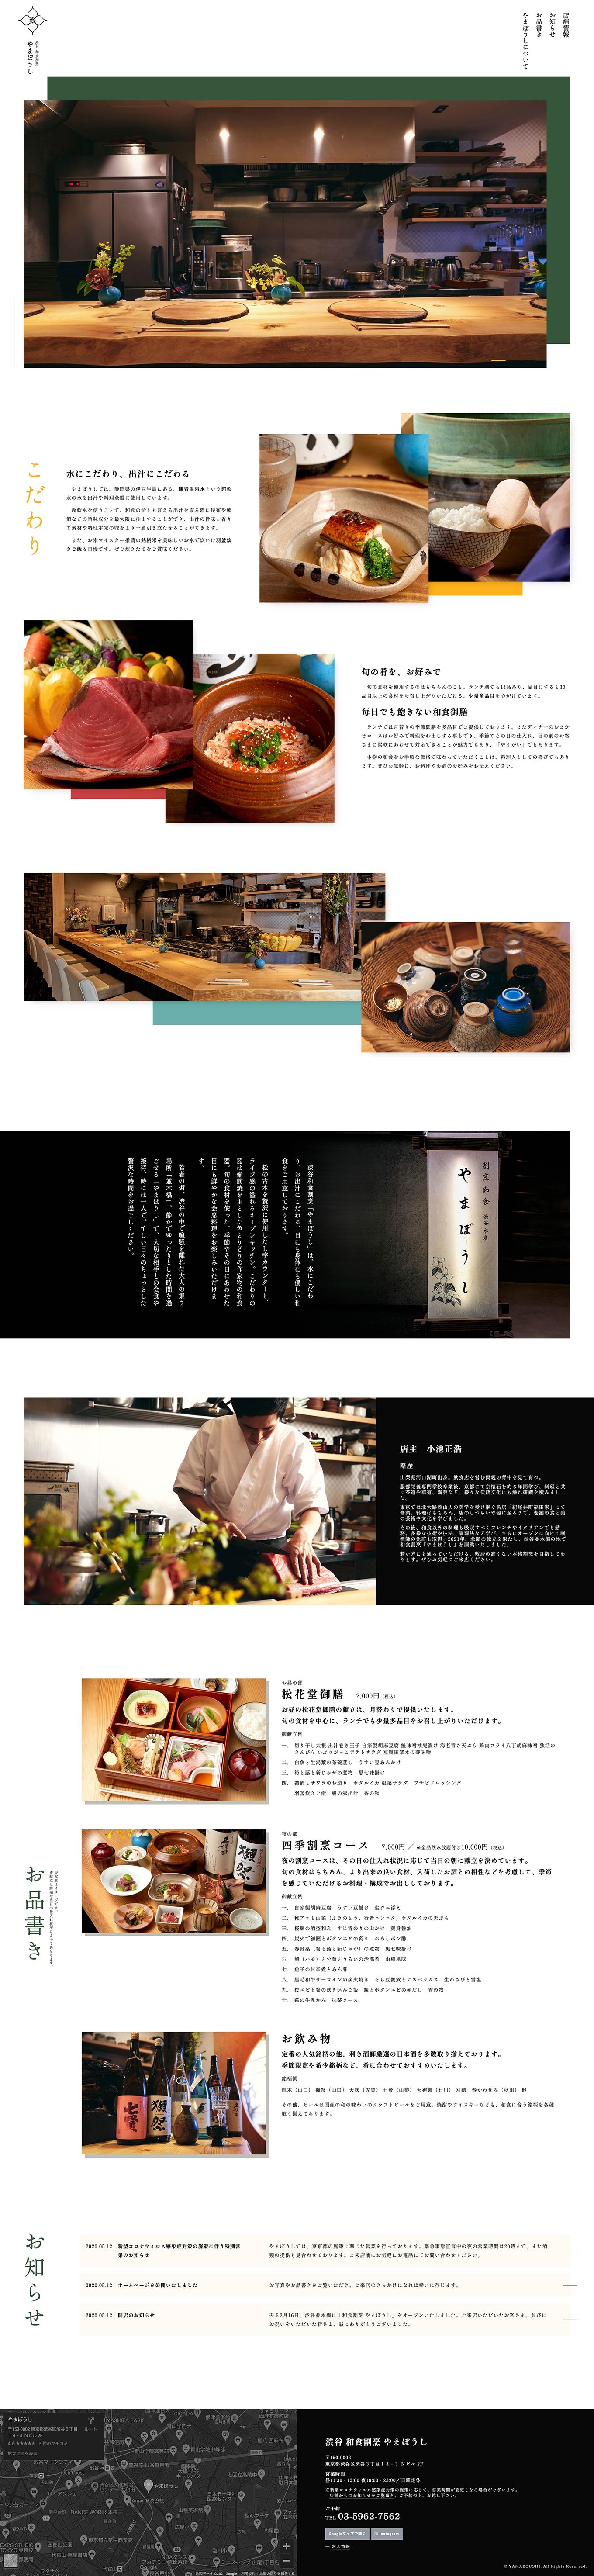 渋谷 和食割烹やまぼうし様のウェブサイトを制作しましたPCの見た目